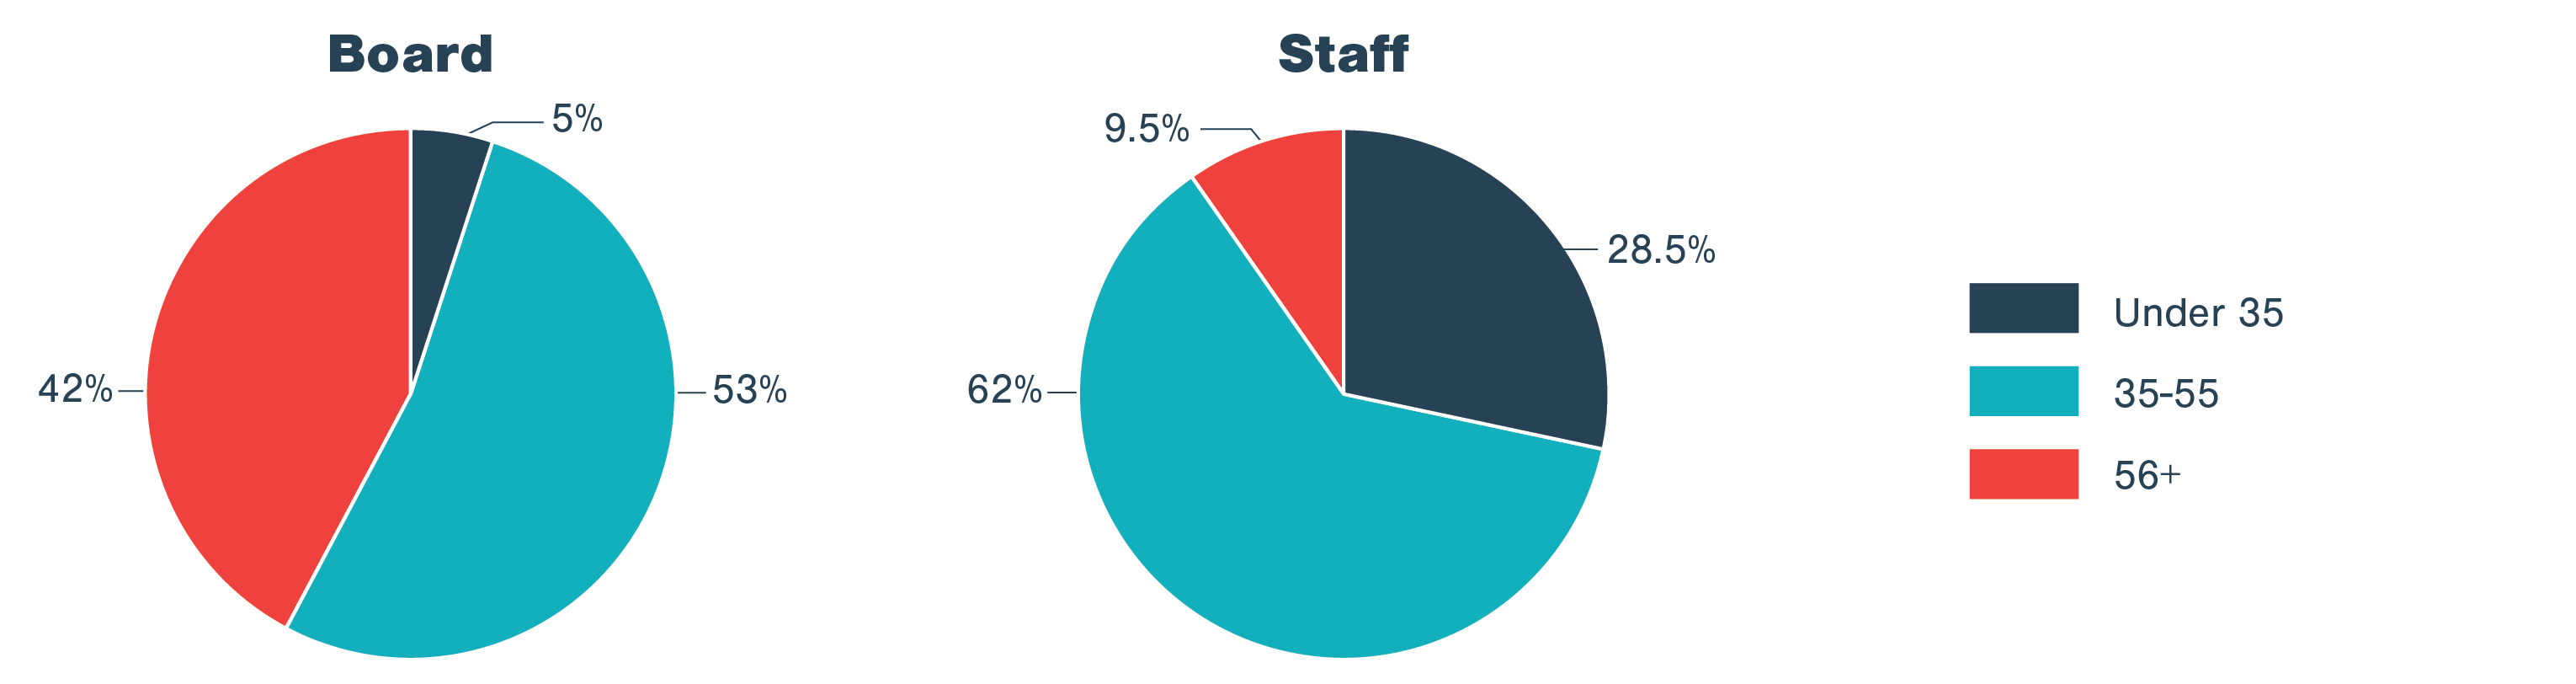 Board: 5% under 35, 53% 35-55, 42% 56+. Staff: 28.5% under 35, 62% 35-55, 9/5% 56+